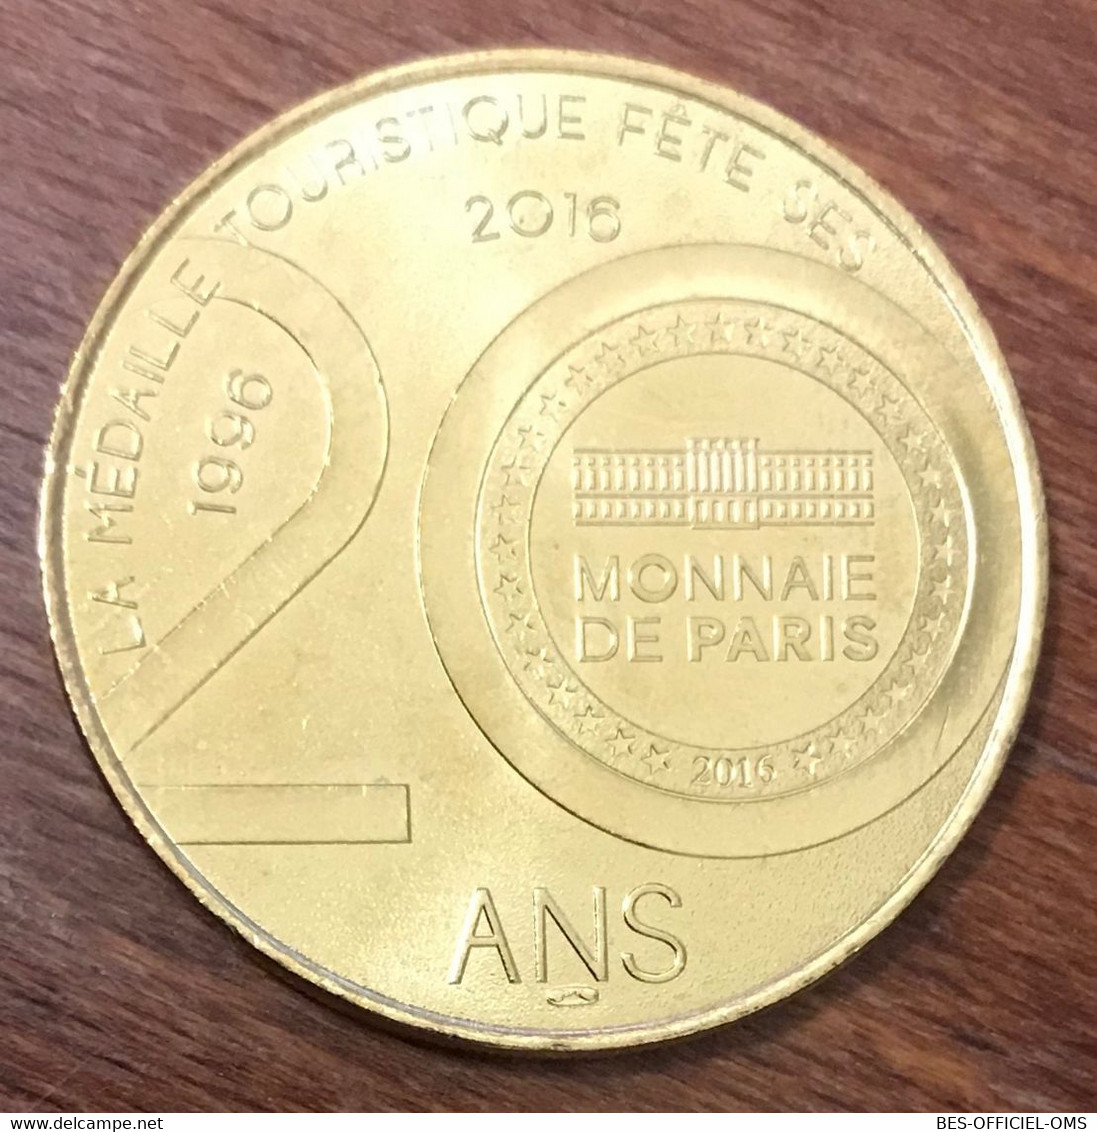 24 GROTTE DE ROUFFIGNAC N°6 MDP 2016 MEDAILLE SOUVENIR MONNAIE DE PARIS JETON TOURISTIQUE MEDALS COINS TOKENS - 2016